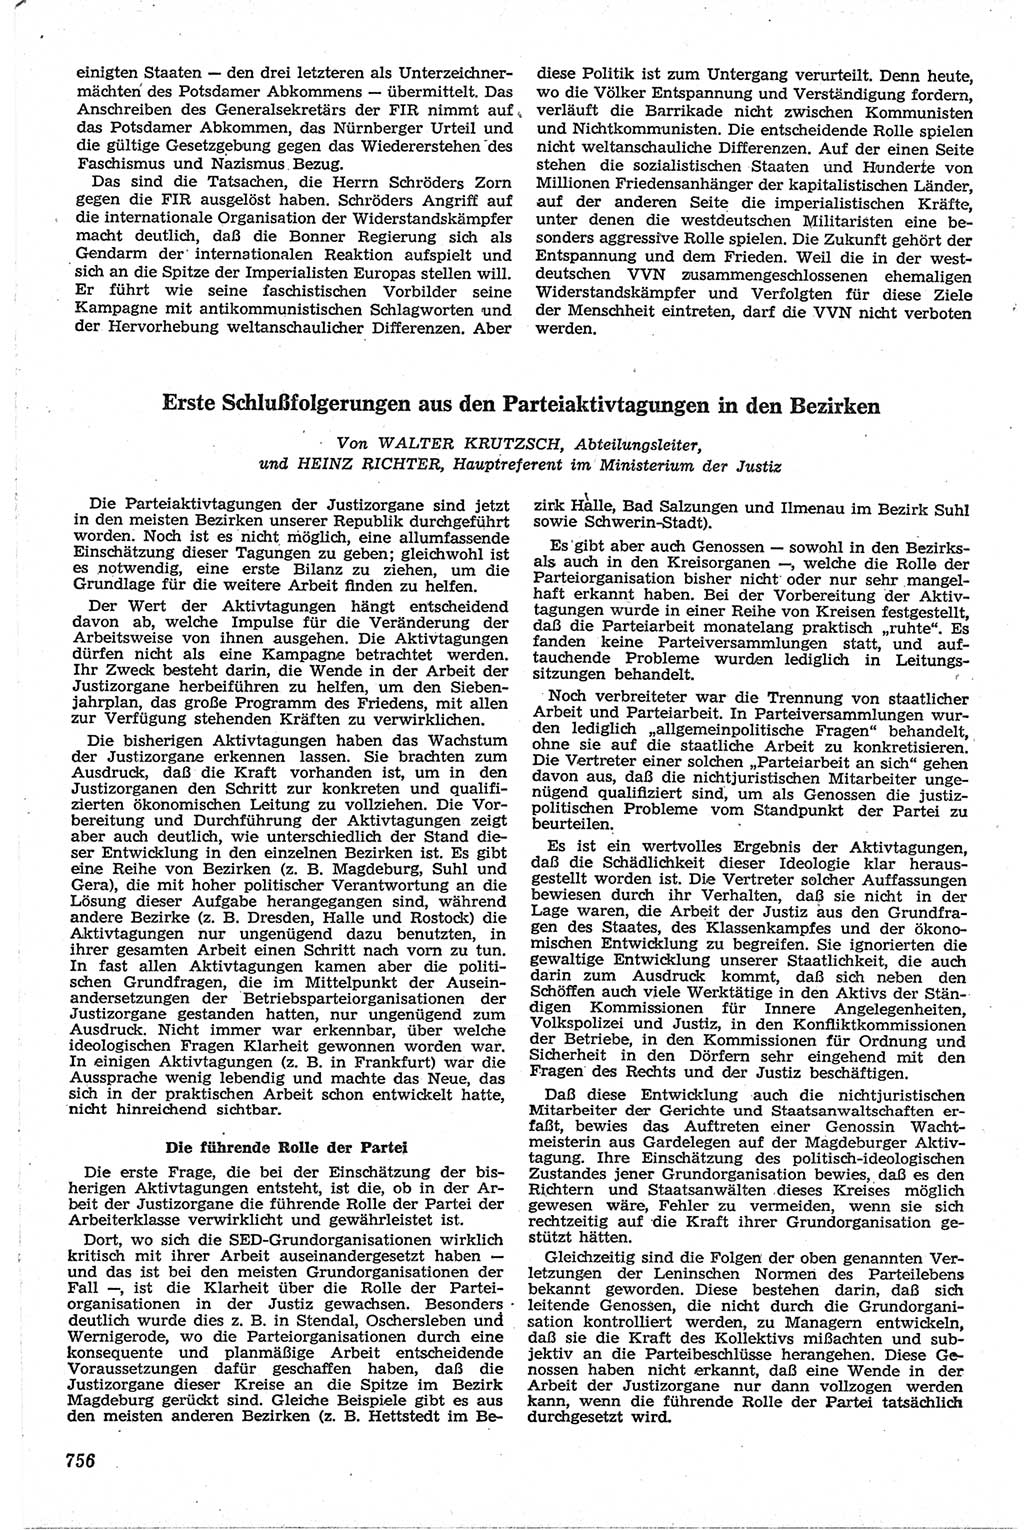 Neue Justiz (NJ), Zeitschrift für Recht und Rechtswissenschaft [Deutsche Demokratische Republik (DDR)], 13. Jahrgang 1959, Seite 756 (NJ DDR 1959, S. 756)